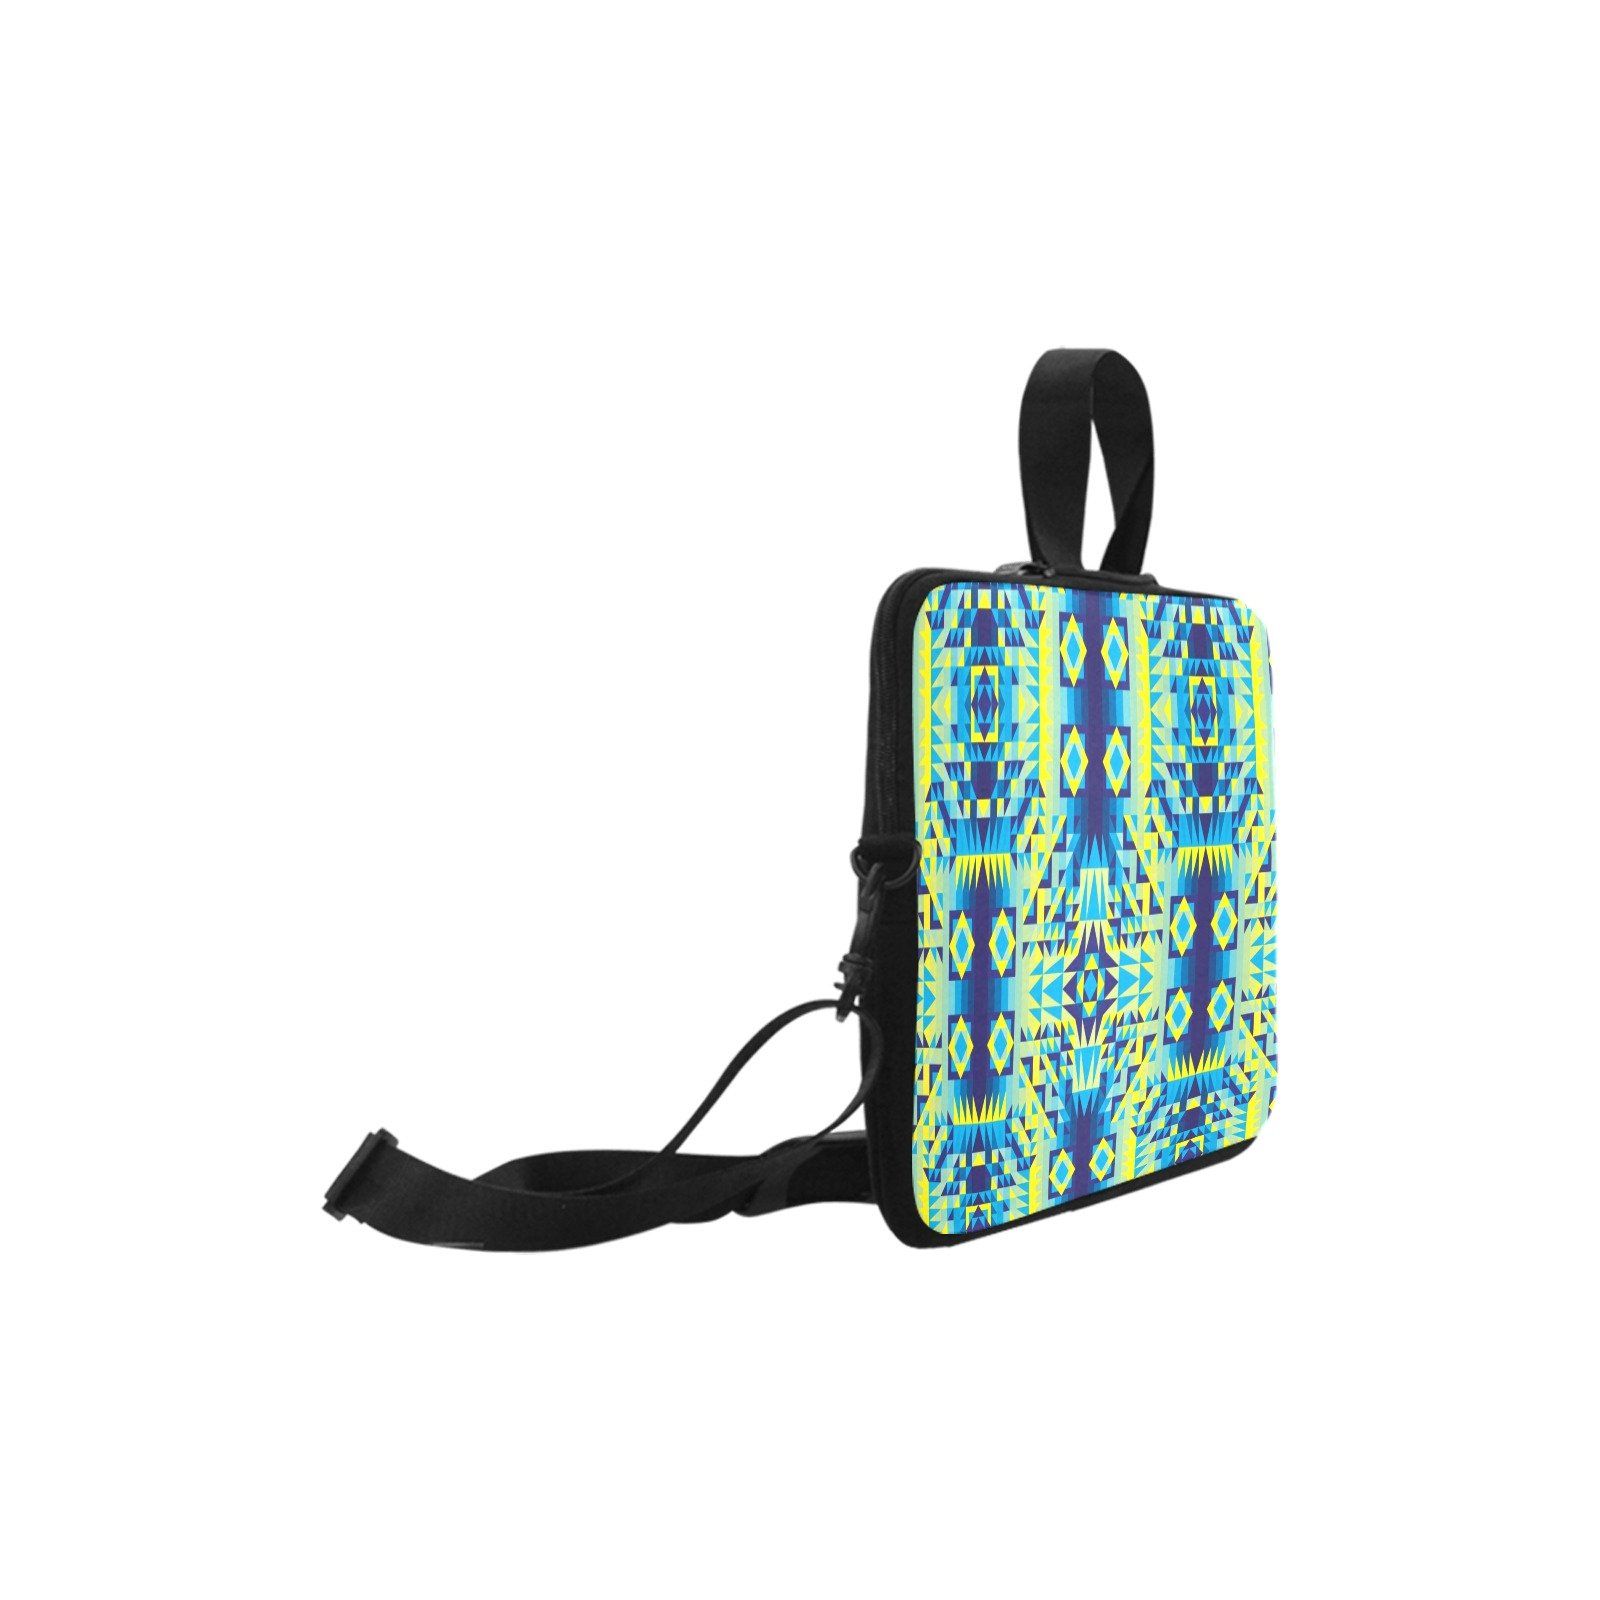 Kaleidoscope Jaune Bleu Laptop Handbags 14" bag e-joyer 